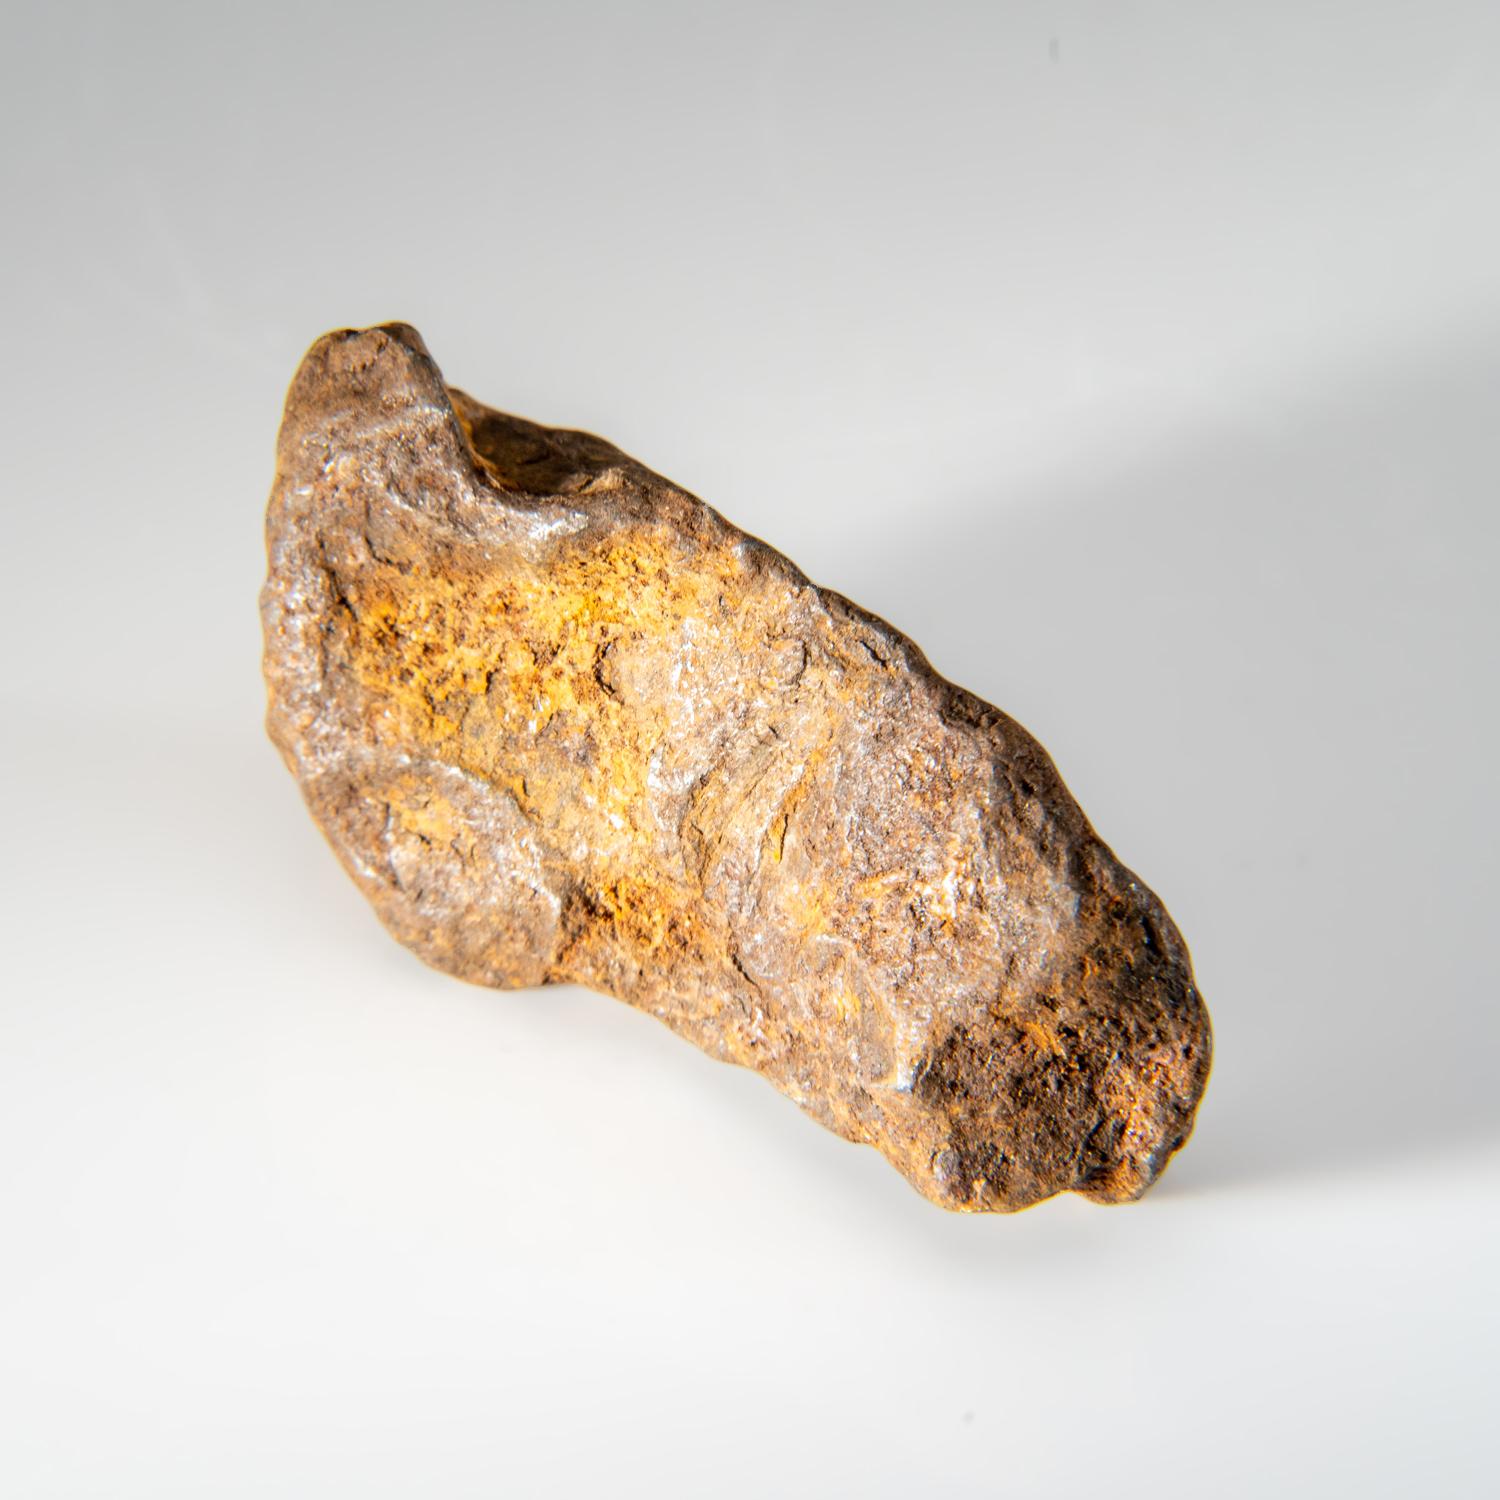 American Genuine Gebel Kamil Meteorite from Egypt (148.9 grams) For Sale